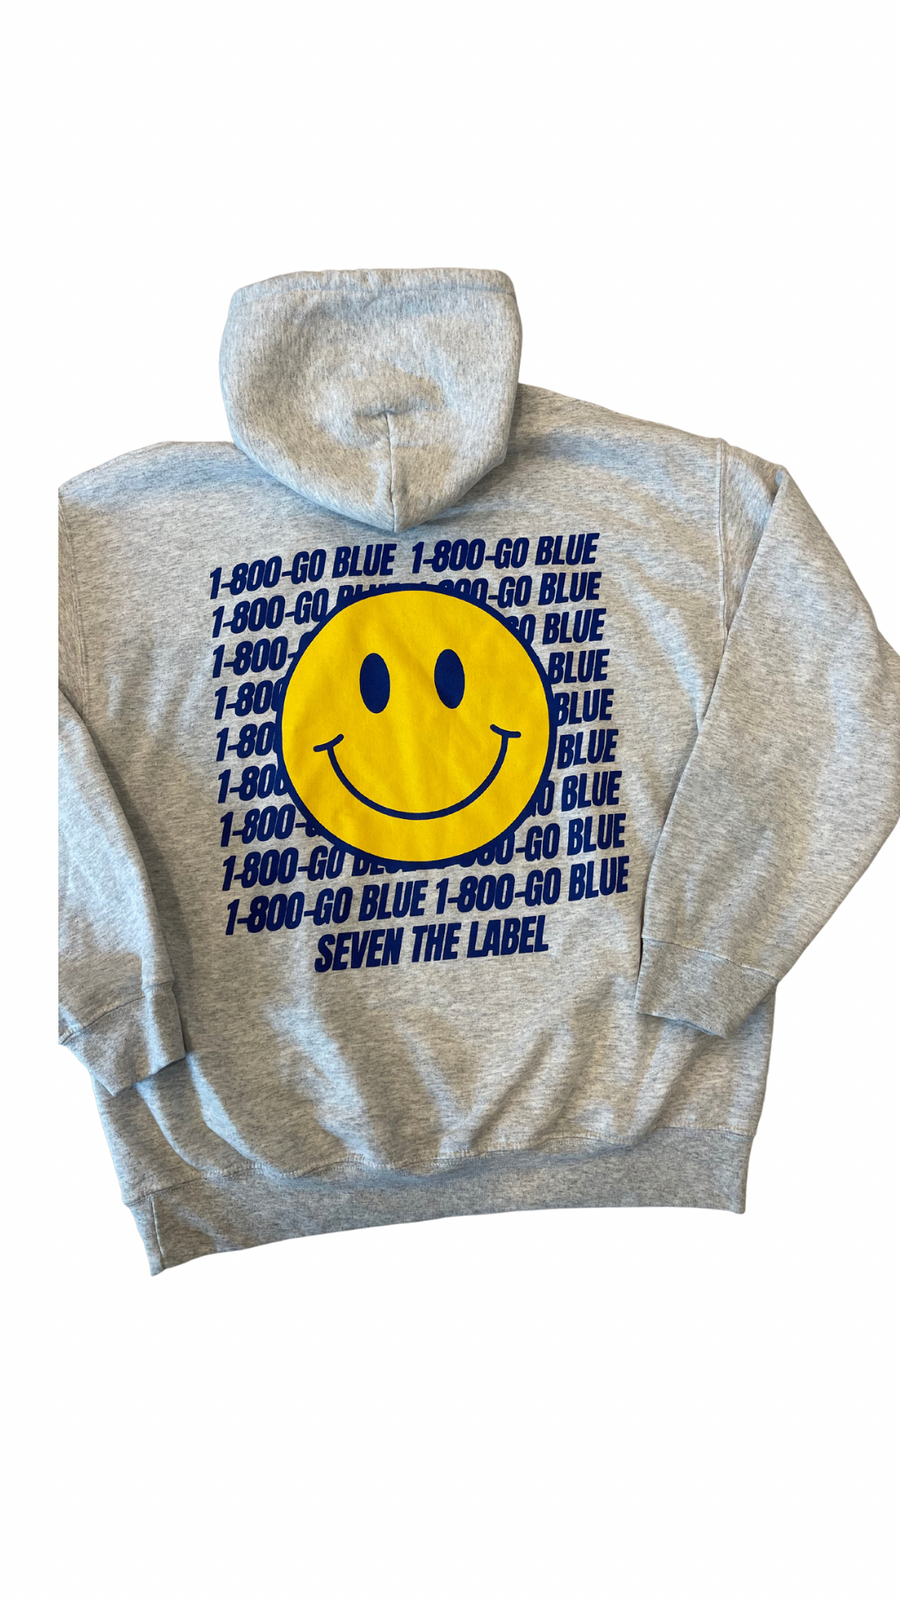 1-800 go blue hoodie